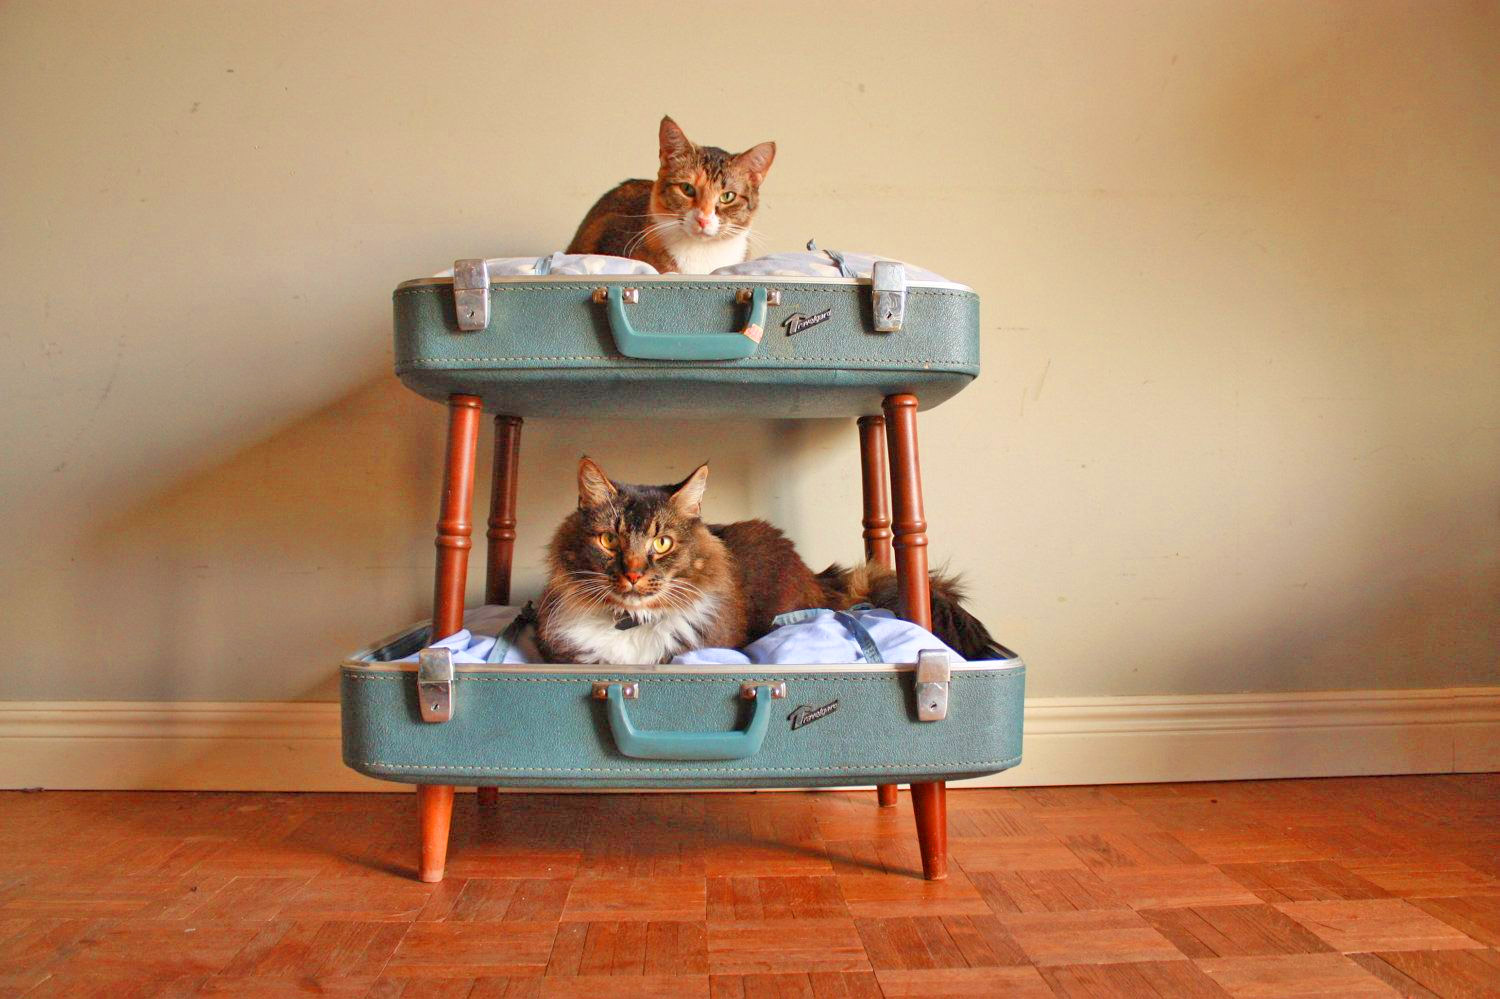 Vintage suitcase cat bunk bed - DIY luggage cat bunk bed